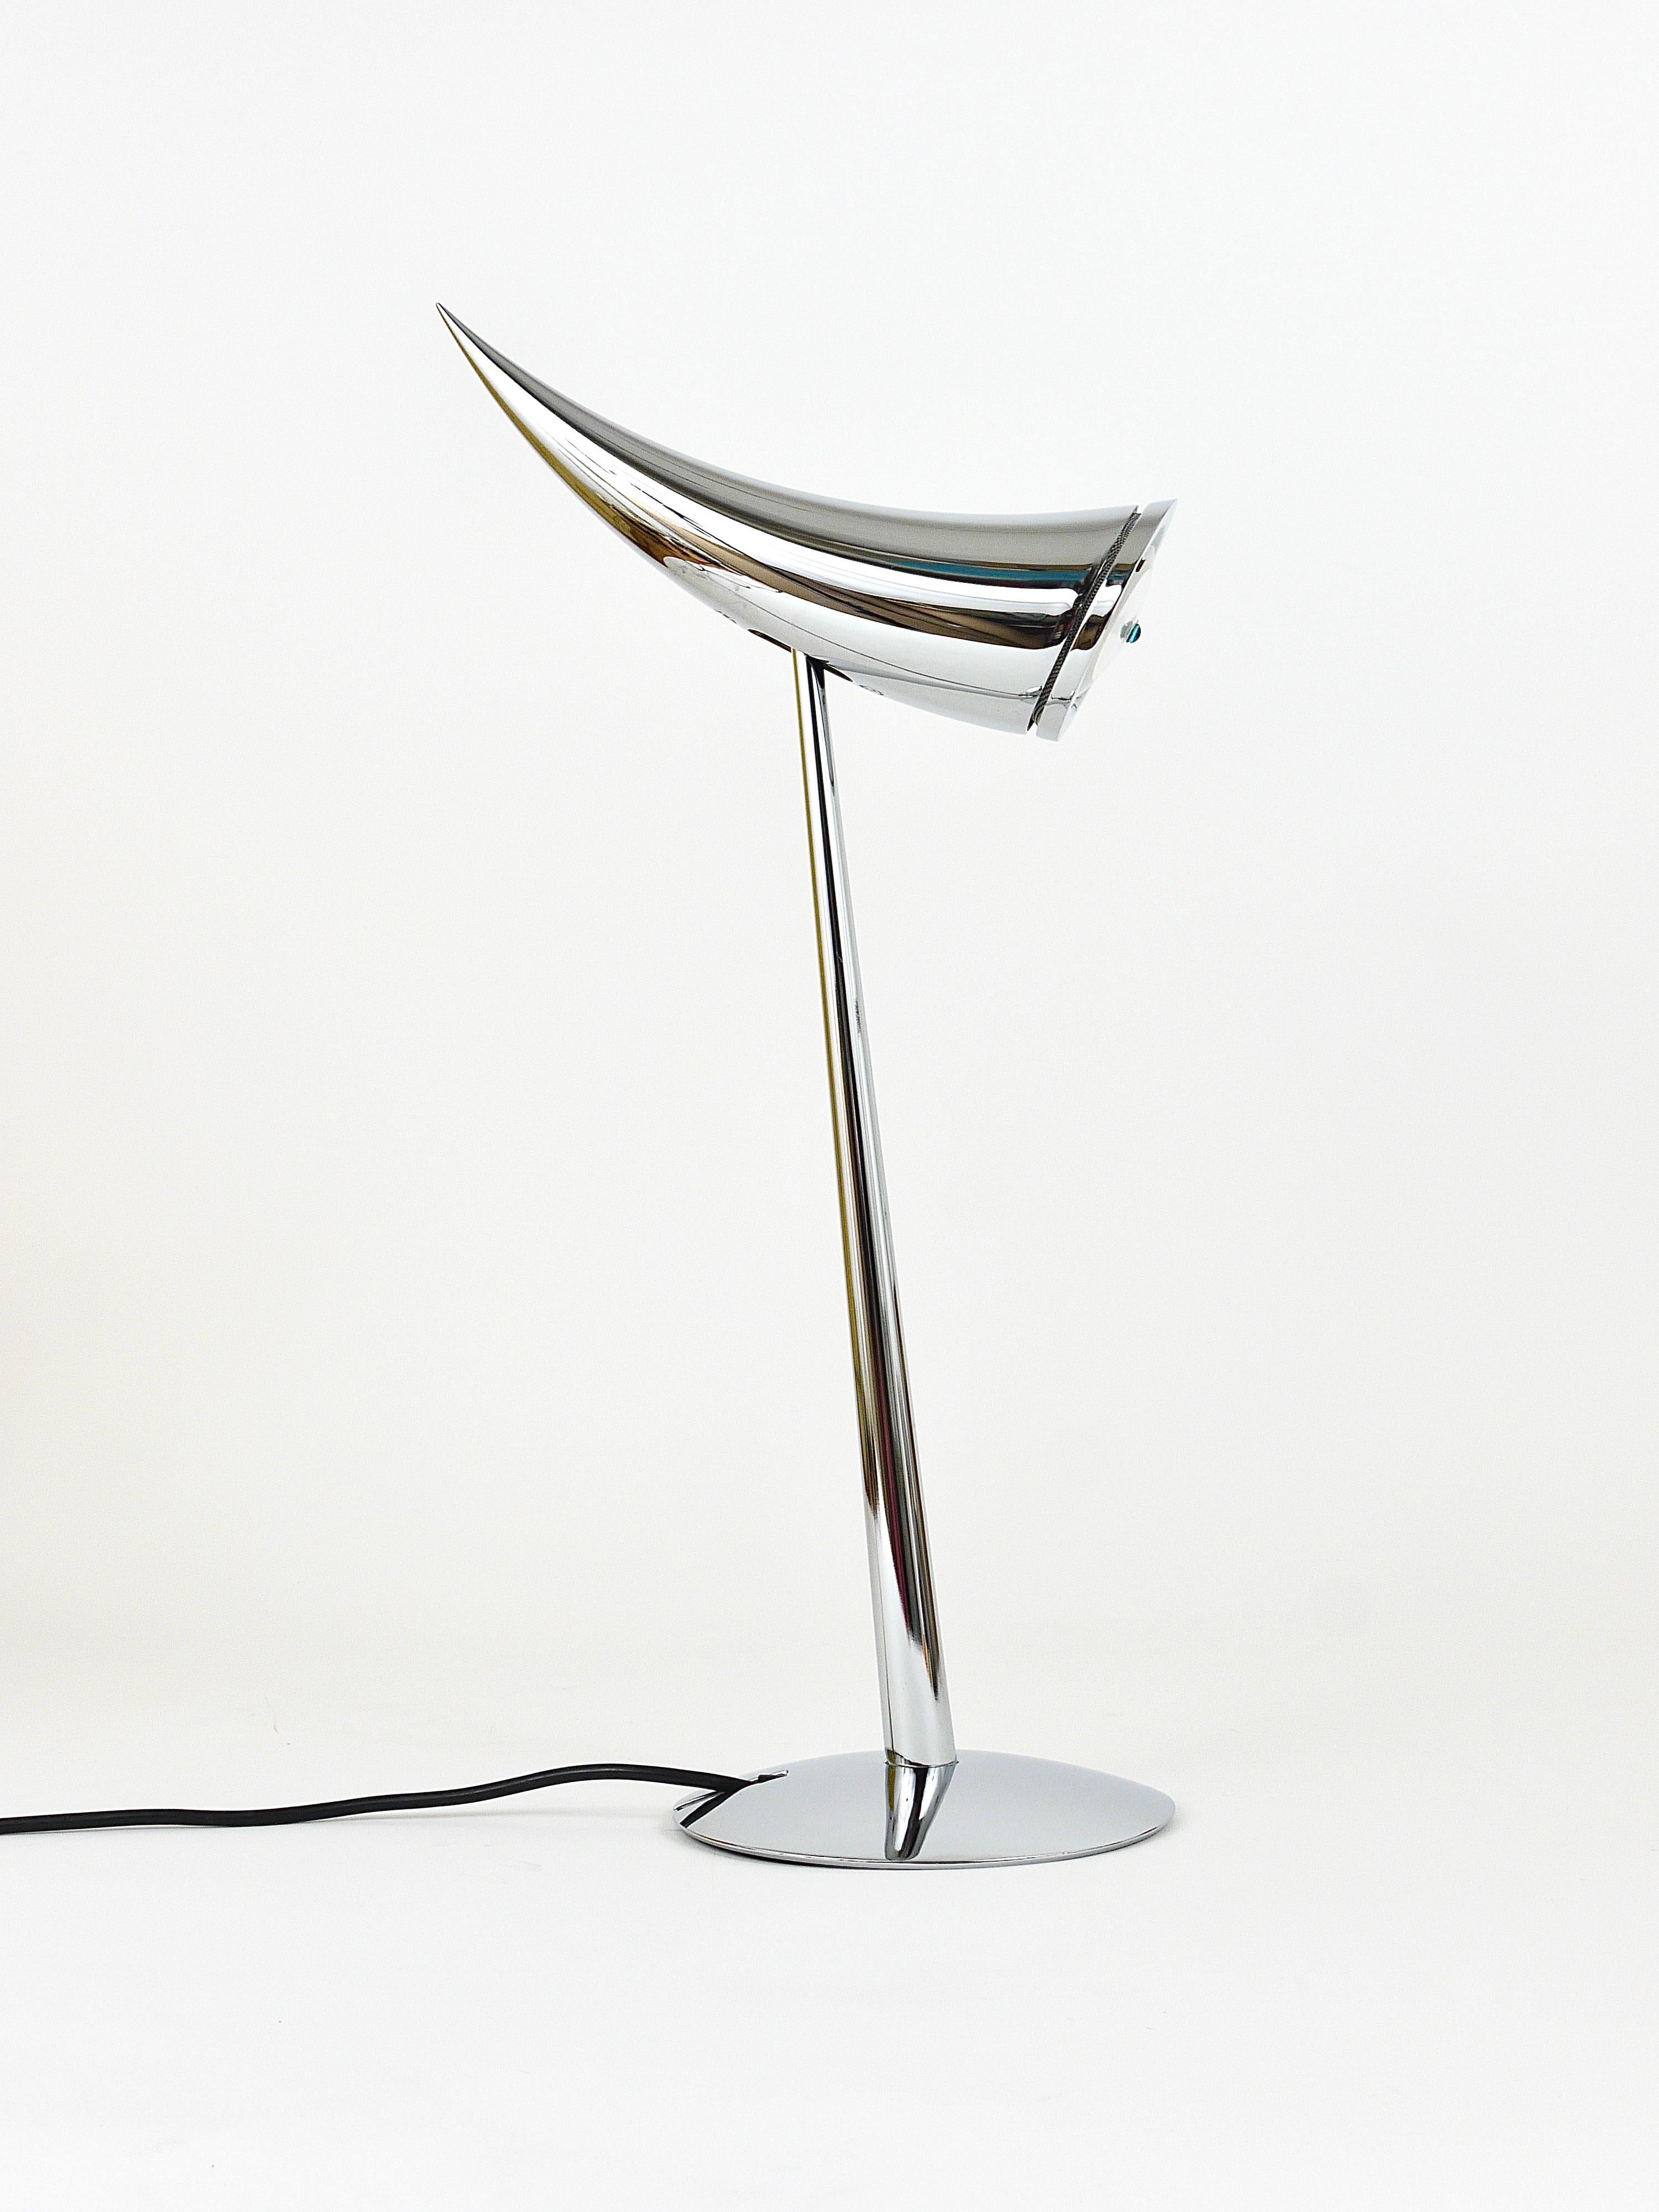 Lampe de bureau ou de table postmoderne Ara des années 1980, chromée et polie comme un miroir, conçue par Philippe Starck en 1988, nommée d'après sa fille. Réalisé par Flos, Italie. Une lampe élégante avec un ingénieux interrupteur intégré dans sa